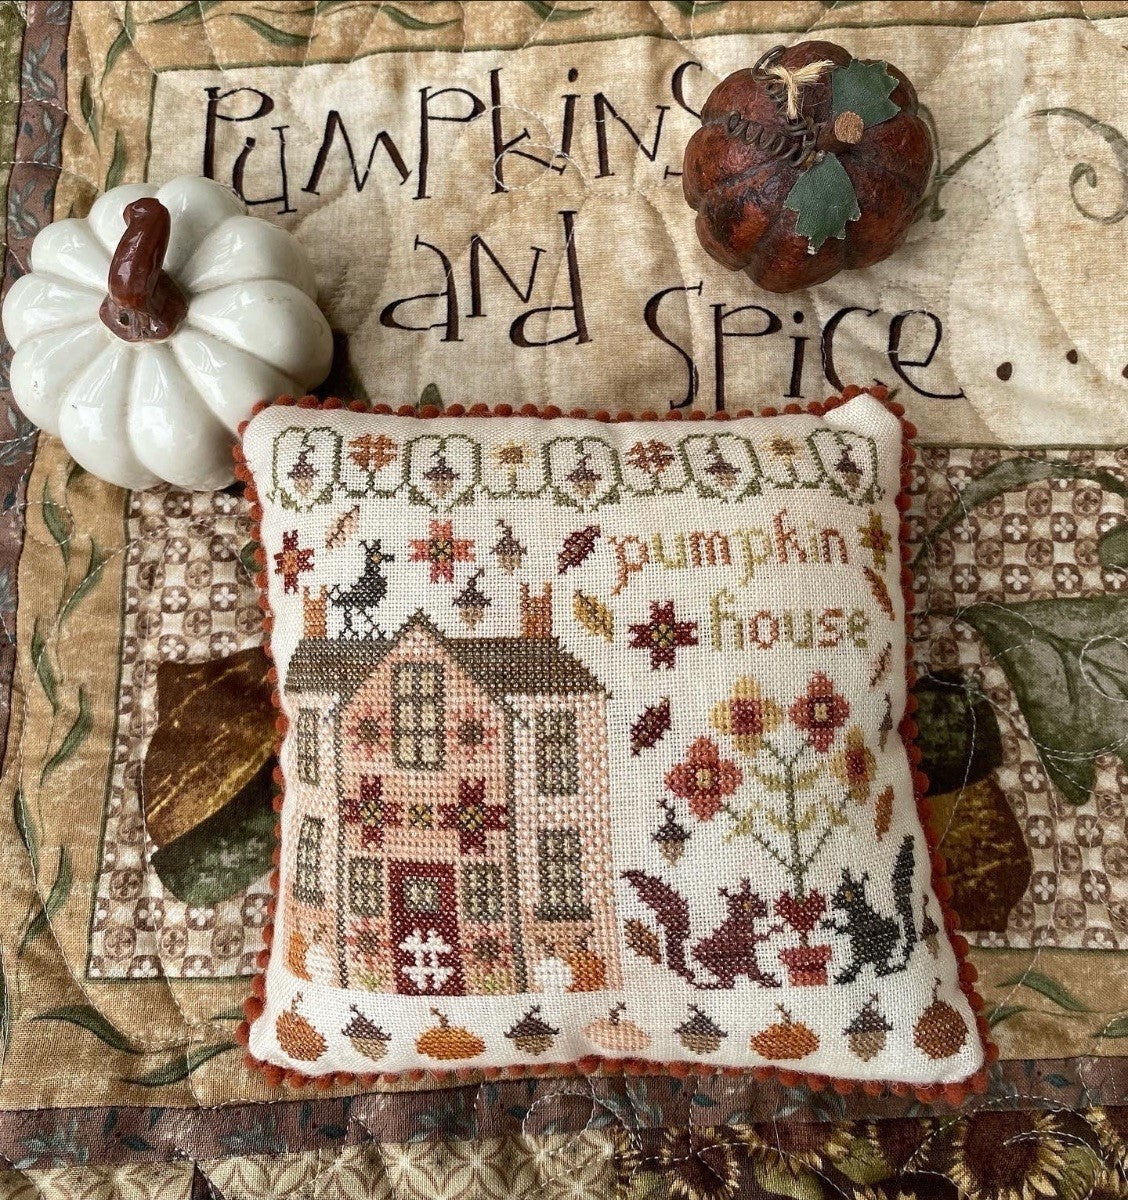 Pumpkin House - Cross stitch pattern by Pansy Patch